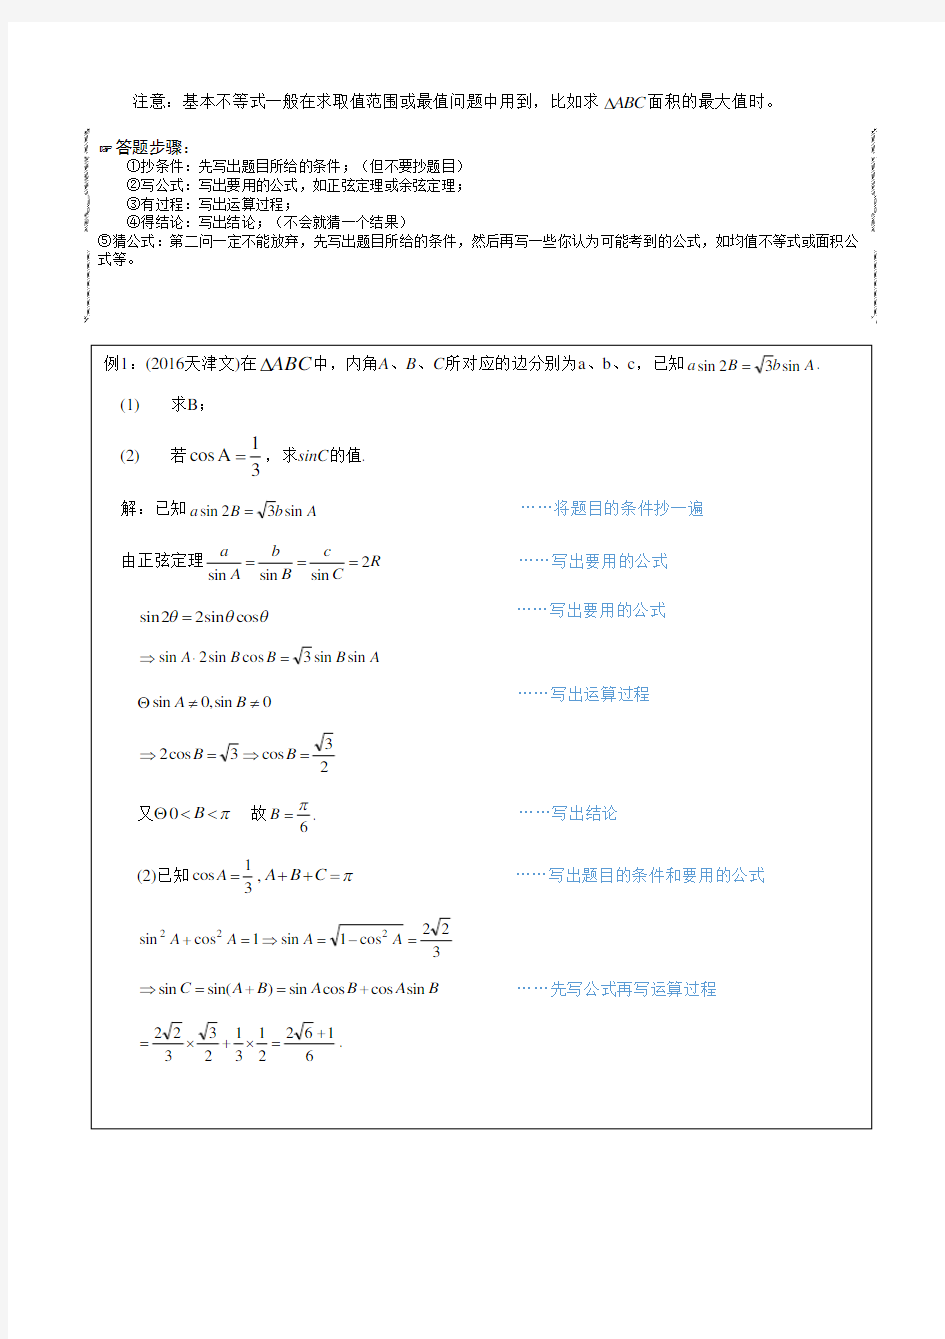 高考数学解答题常考公式及答题模板(文理)(wenli )